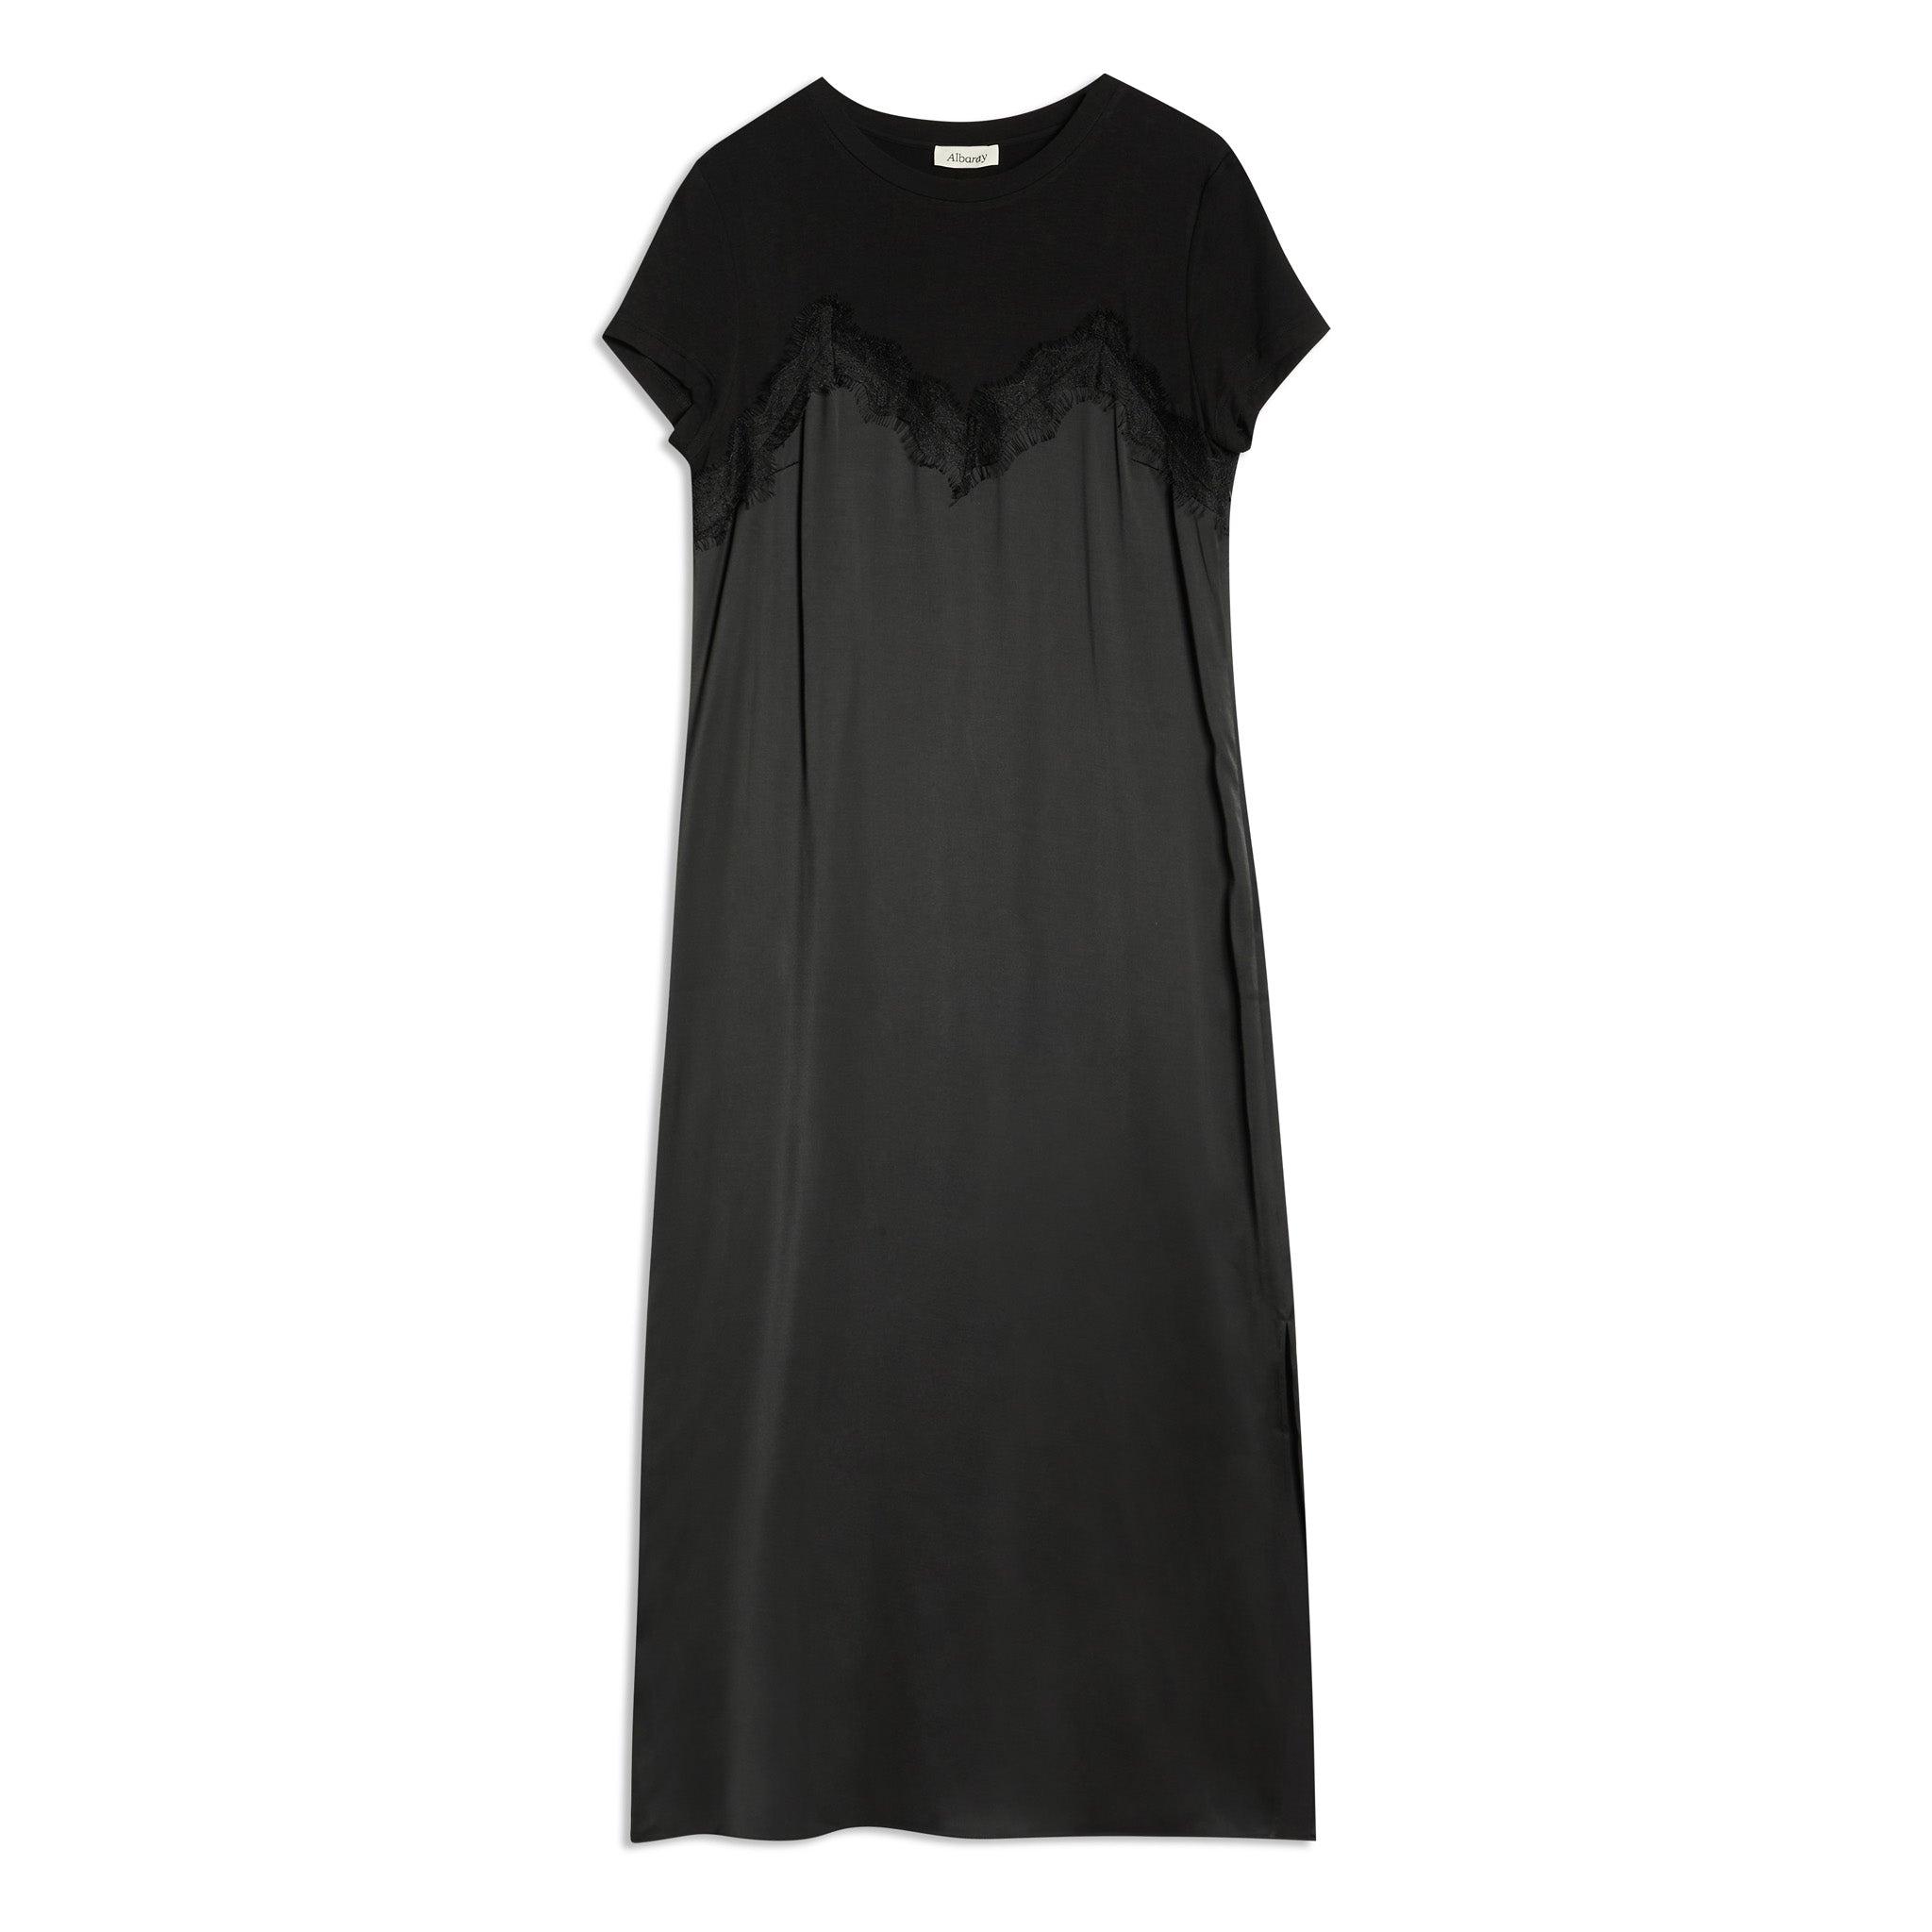 Black Satin & Lace Jersey Dress